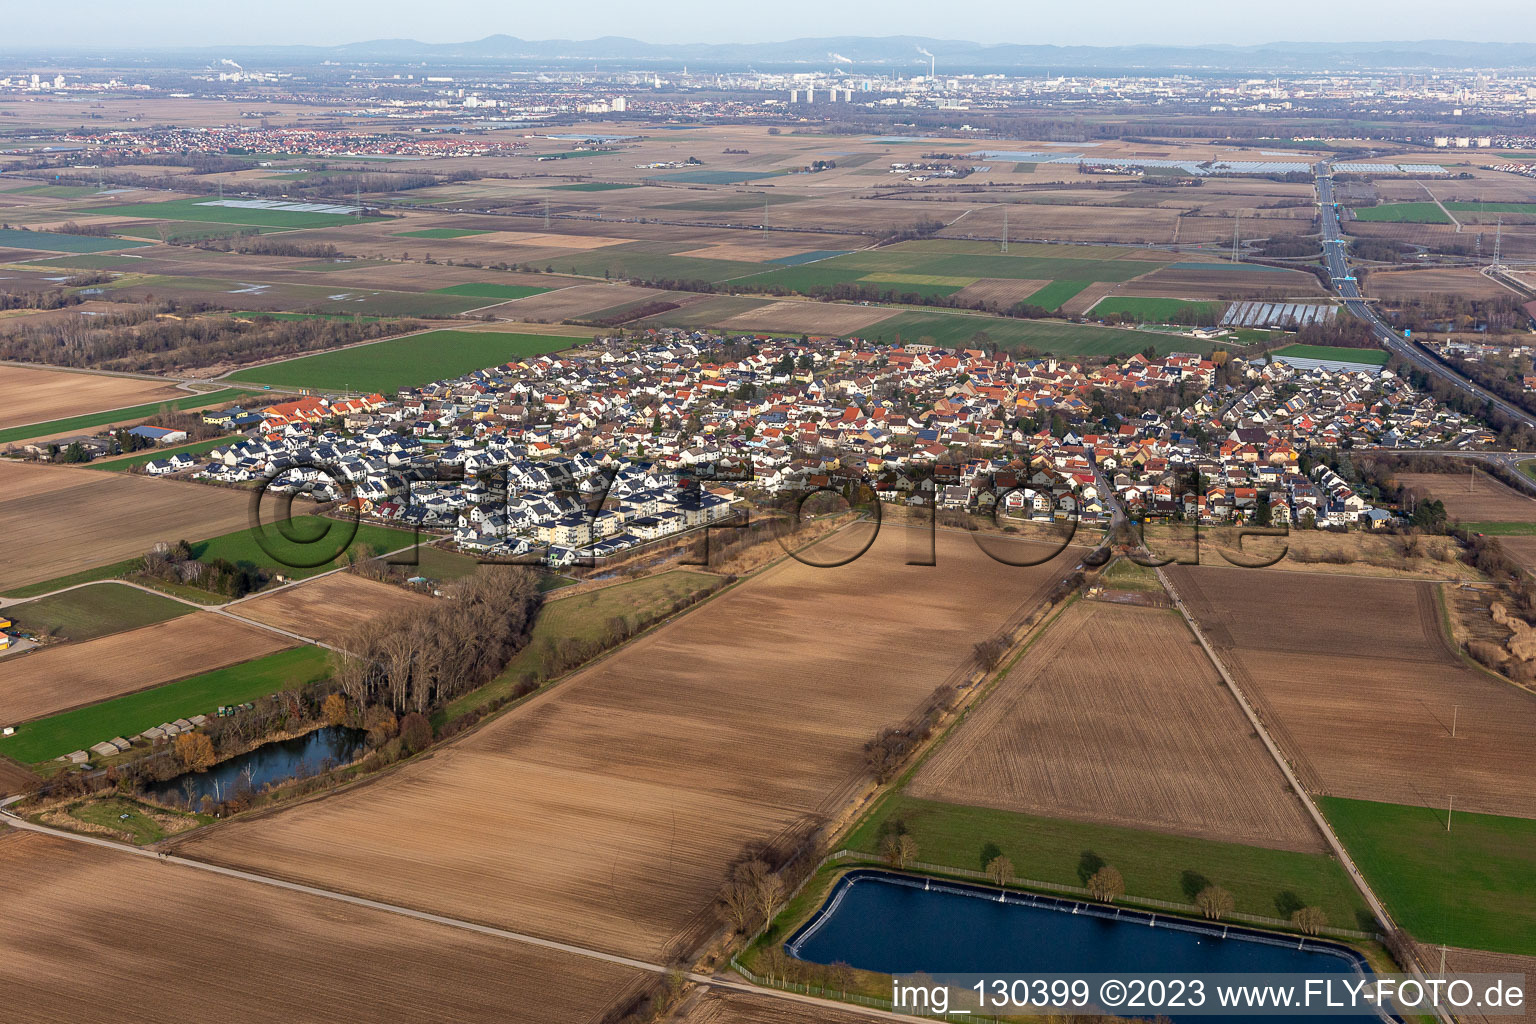 Aerial view of District Schauernheim in Dannstadt-Schauernheim in the state Rhineland-Palatinate, Germany